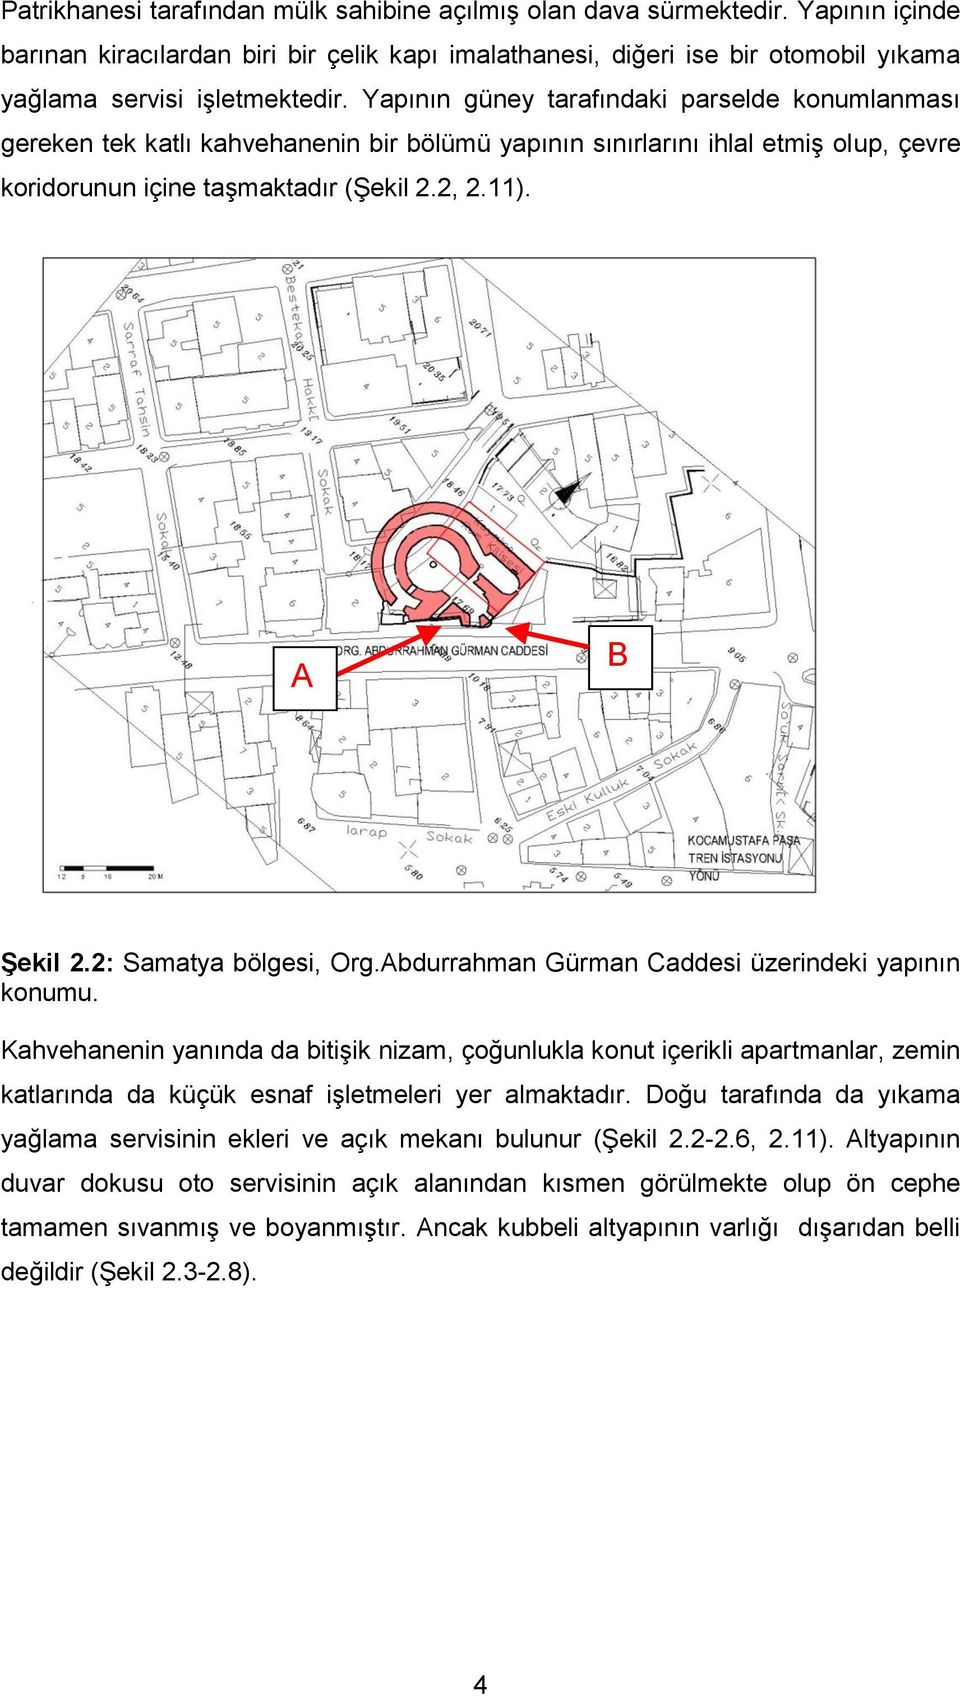 2: Samatya bölgesi, Org.Abdurrahman Gürman Caddesi üzerindeki yapının konumu.